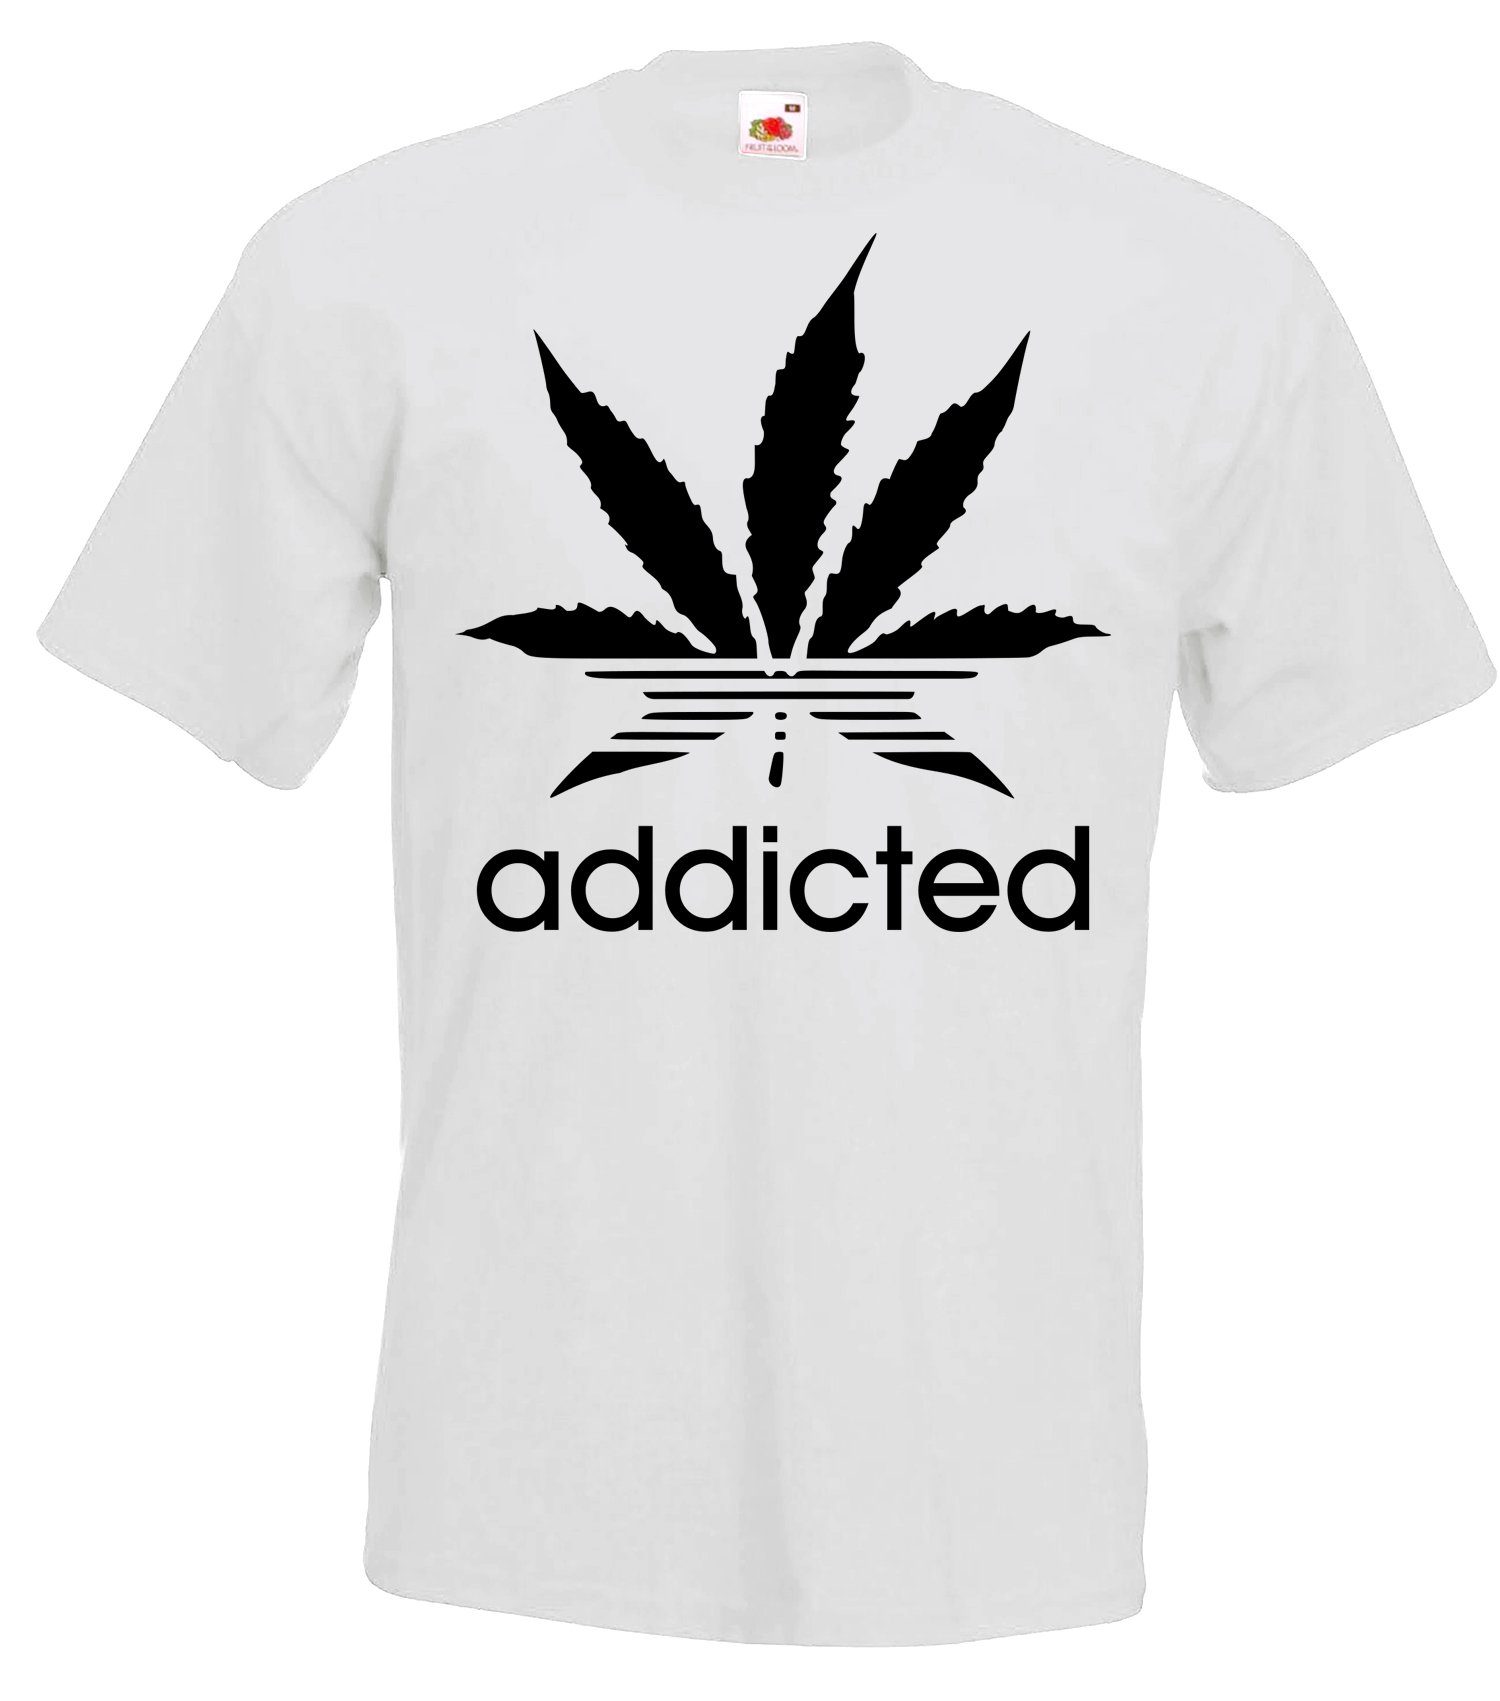 Addicted Motiv T-Shirt Designz Weiss Youth mit trendigem T-Shirt Herren